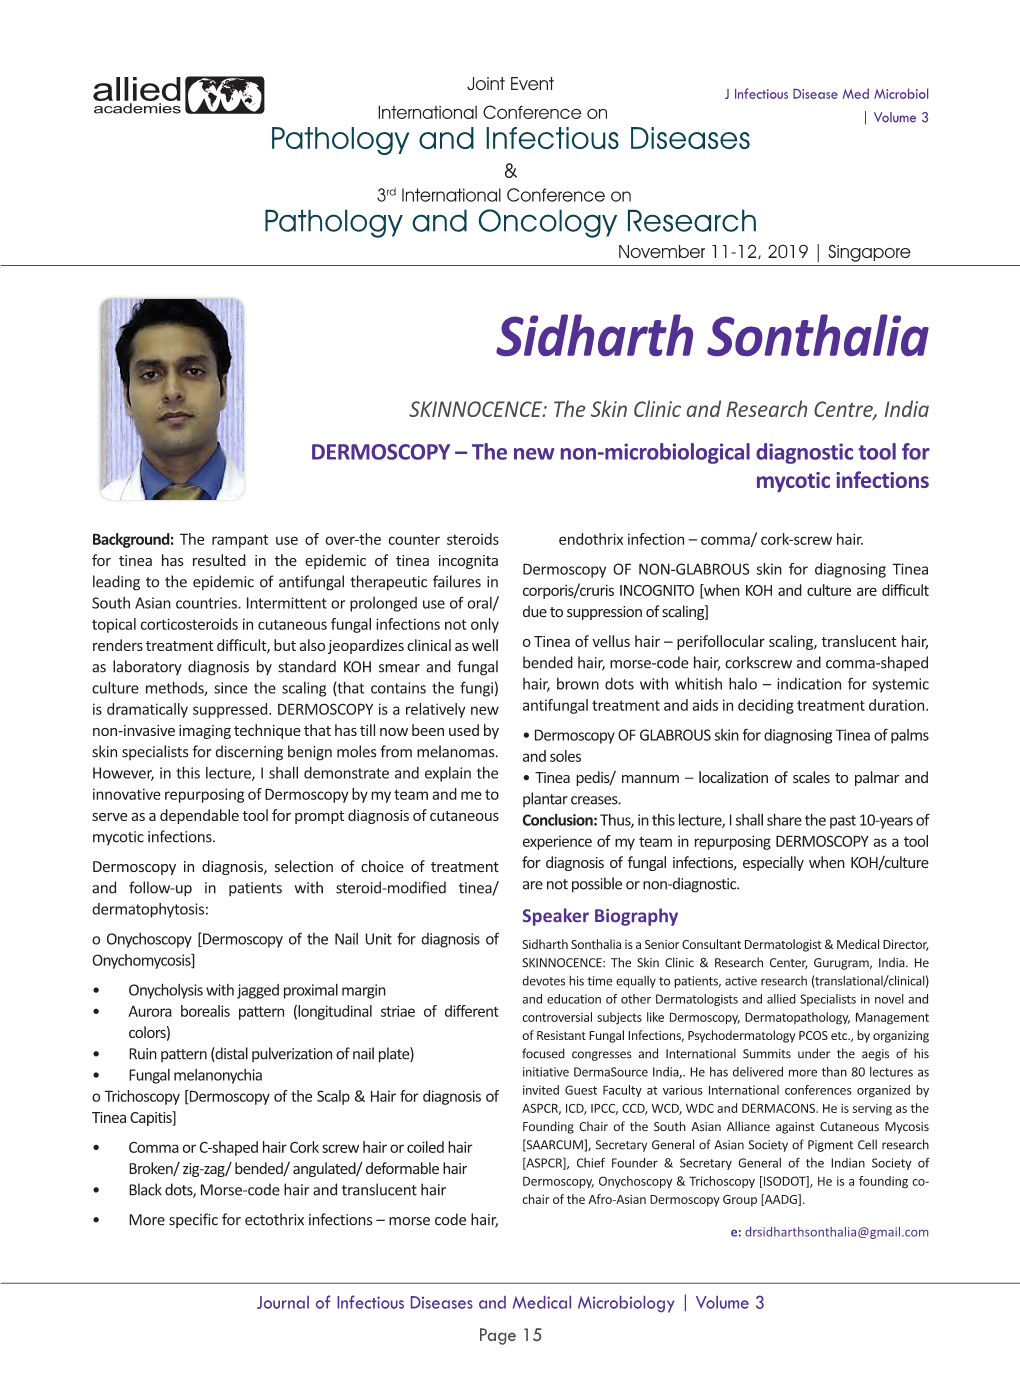 Sidharth Sonthalia